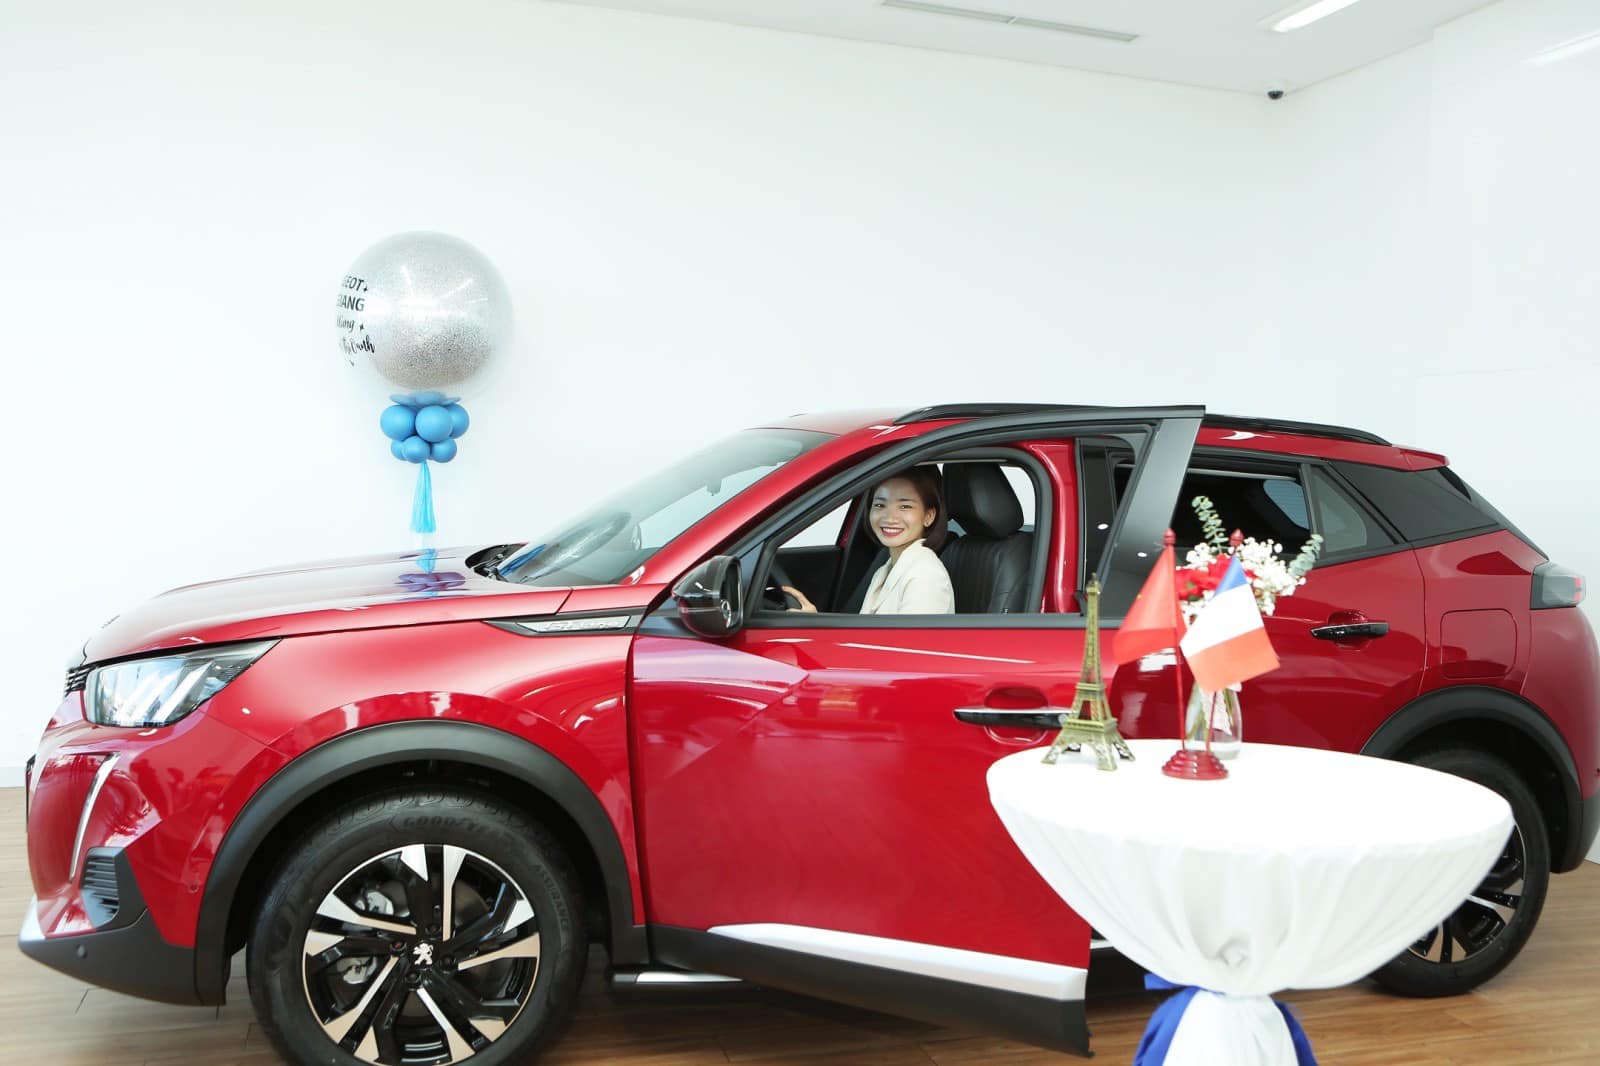 Nguyễn Thị Oanh hân hoan nhận xe Peugeot, chờ đợi trải nghiệm thú vị  - Ảnh 4.